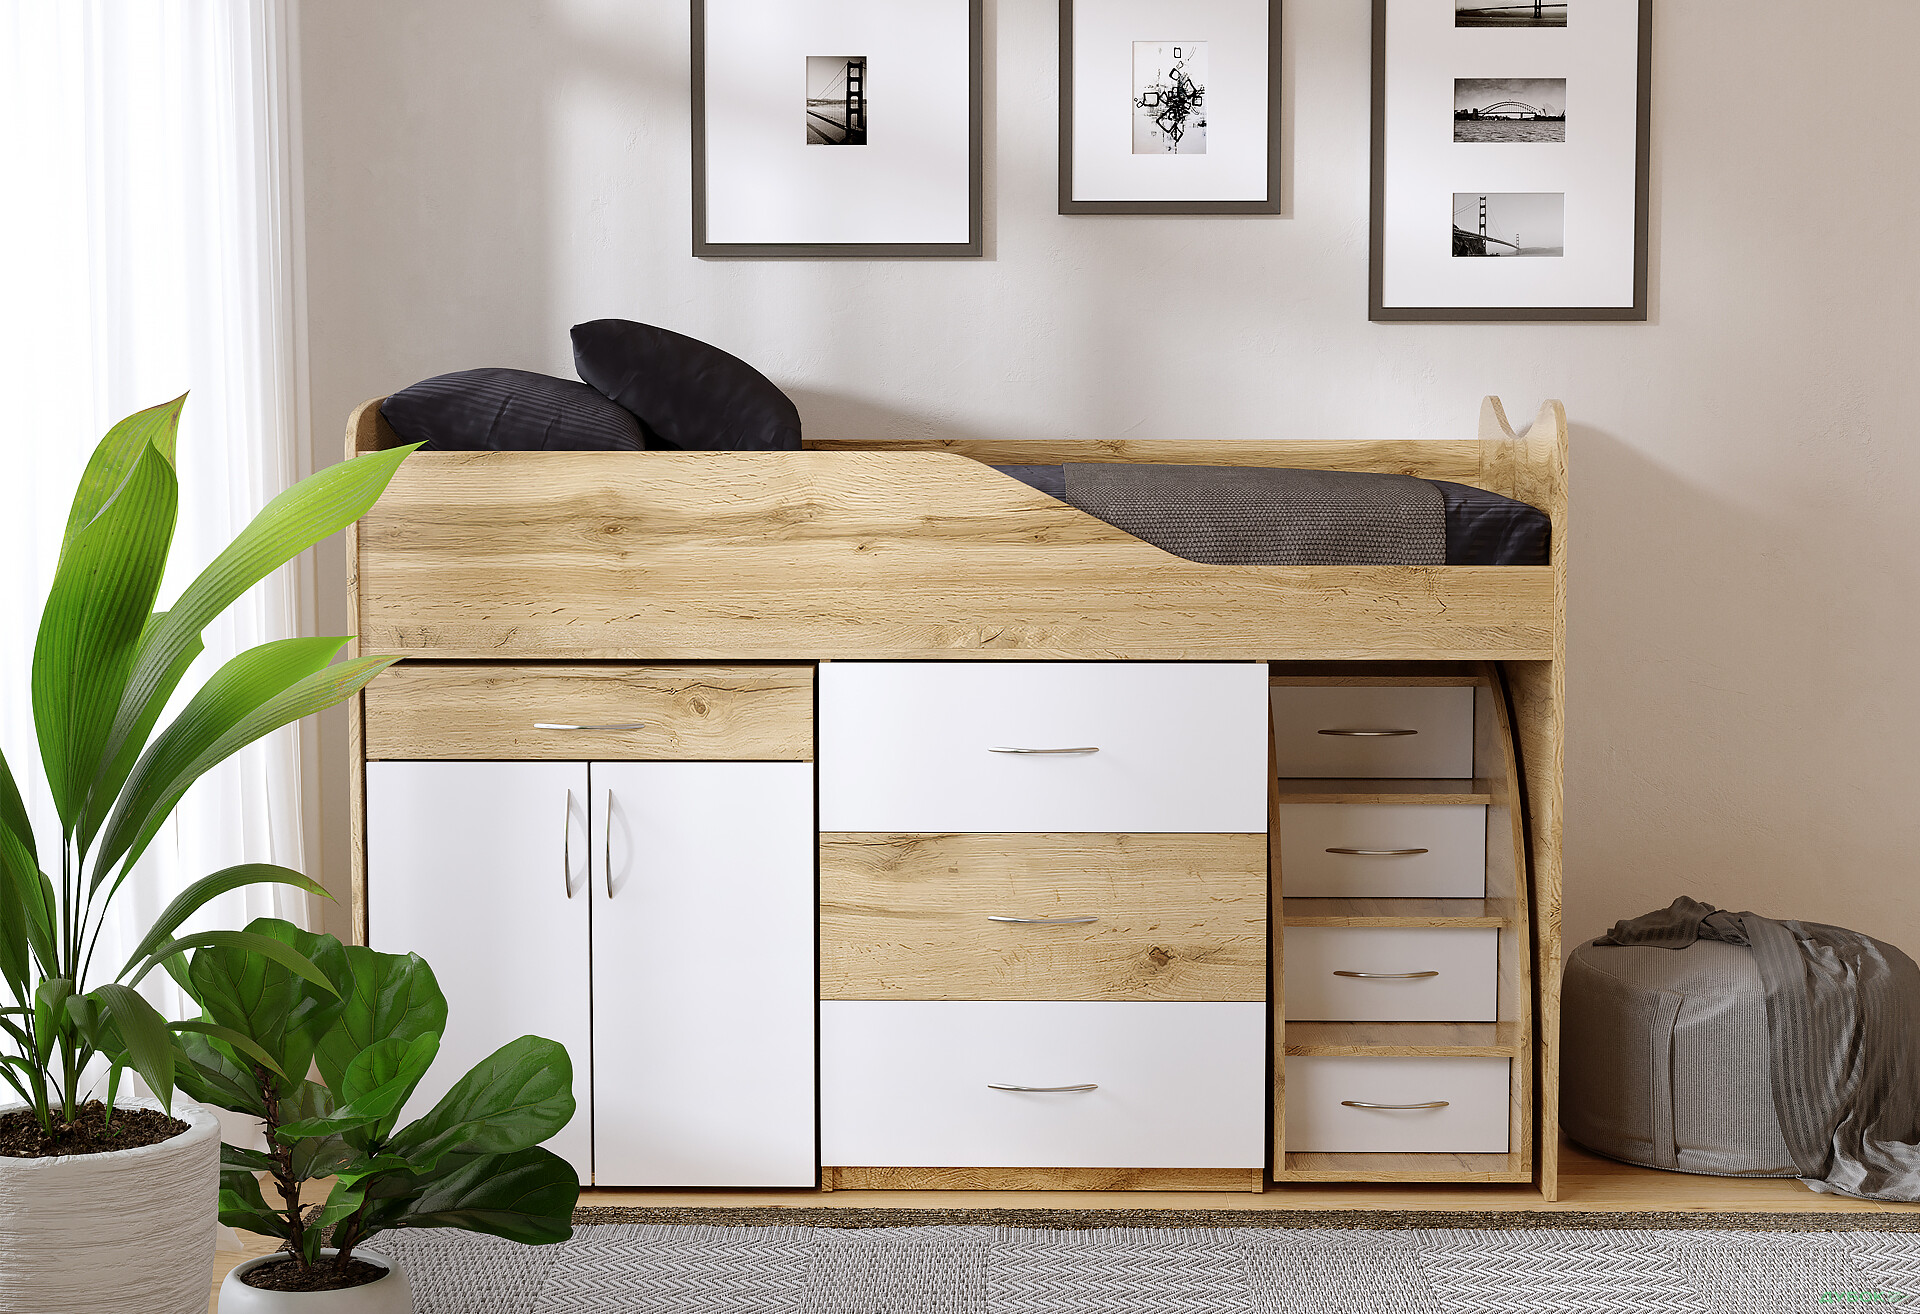 Фото 5 - Кровать-горка Виорина Деко 5 80х180 см с ящиками, лестницами и столом